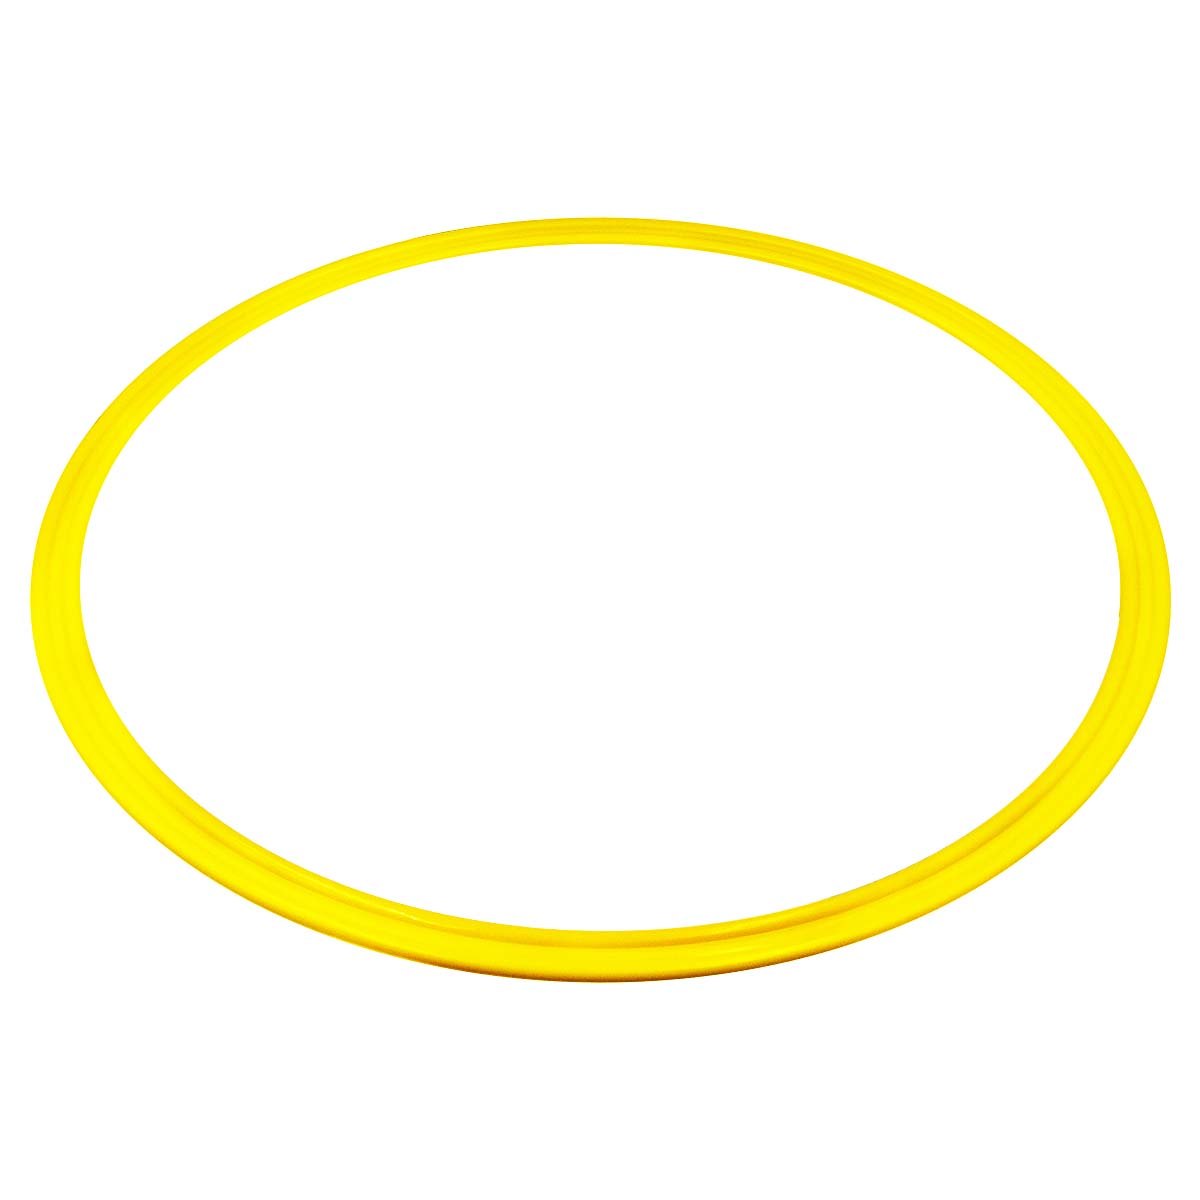 Aro De Agilidad De Plástico Plano En Pvc Ø 40cm Gladiatorfit - amarillo - 